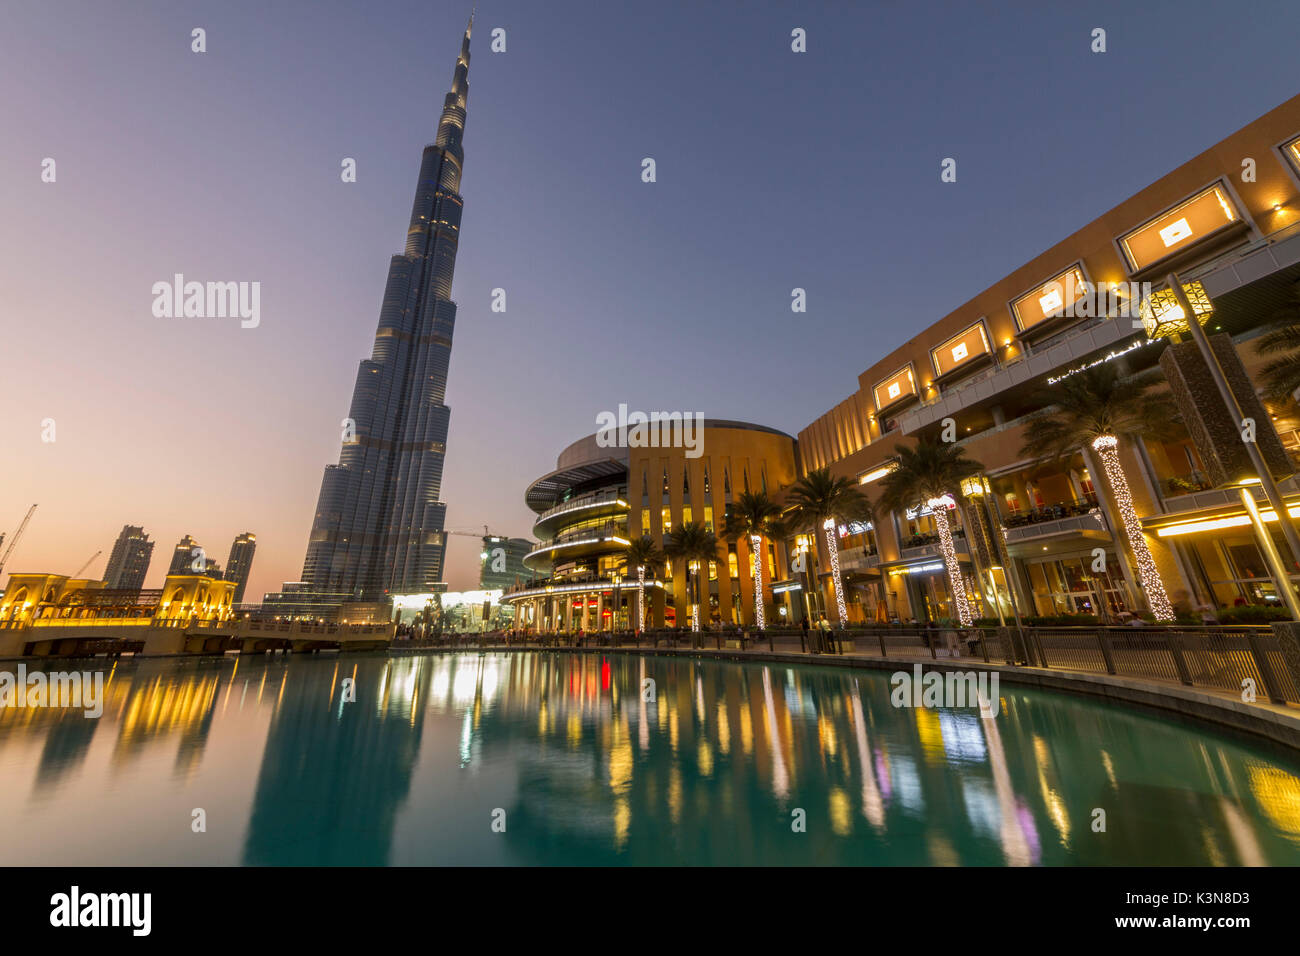 Die Wolkenkratzer Burj Khalifa, dem gleichnamigen See und das Einkaufszentrum in Dubai. Vereinigte Arabische Emirate Stockfoto